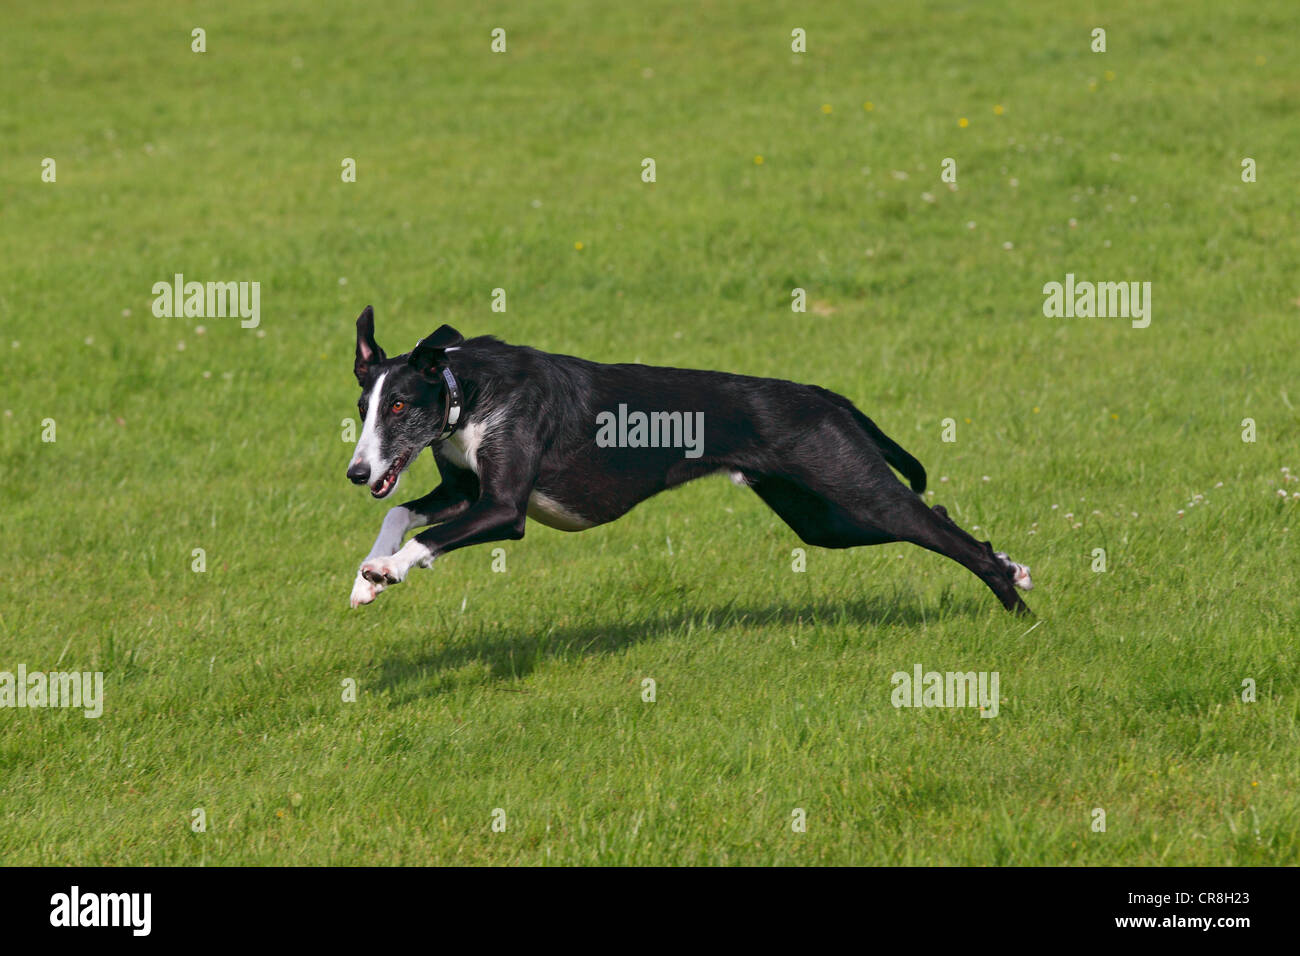 Galgo Espanol, Galgo espagnol, Greyhound espagnol (Canis lupus familiaris), exécuté sur une course poursuite Banque D'Images